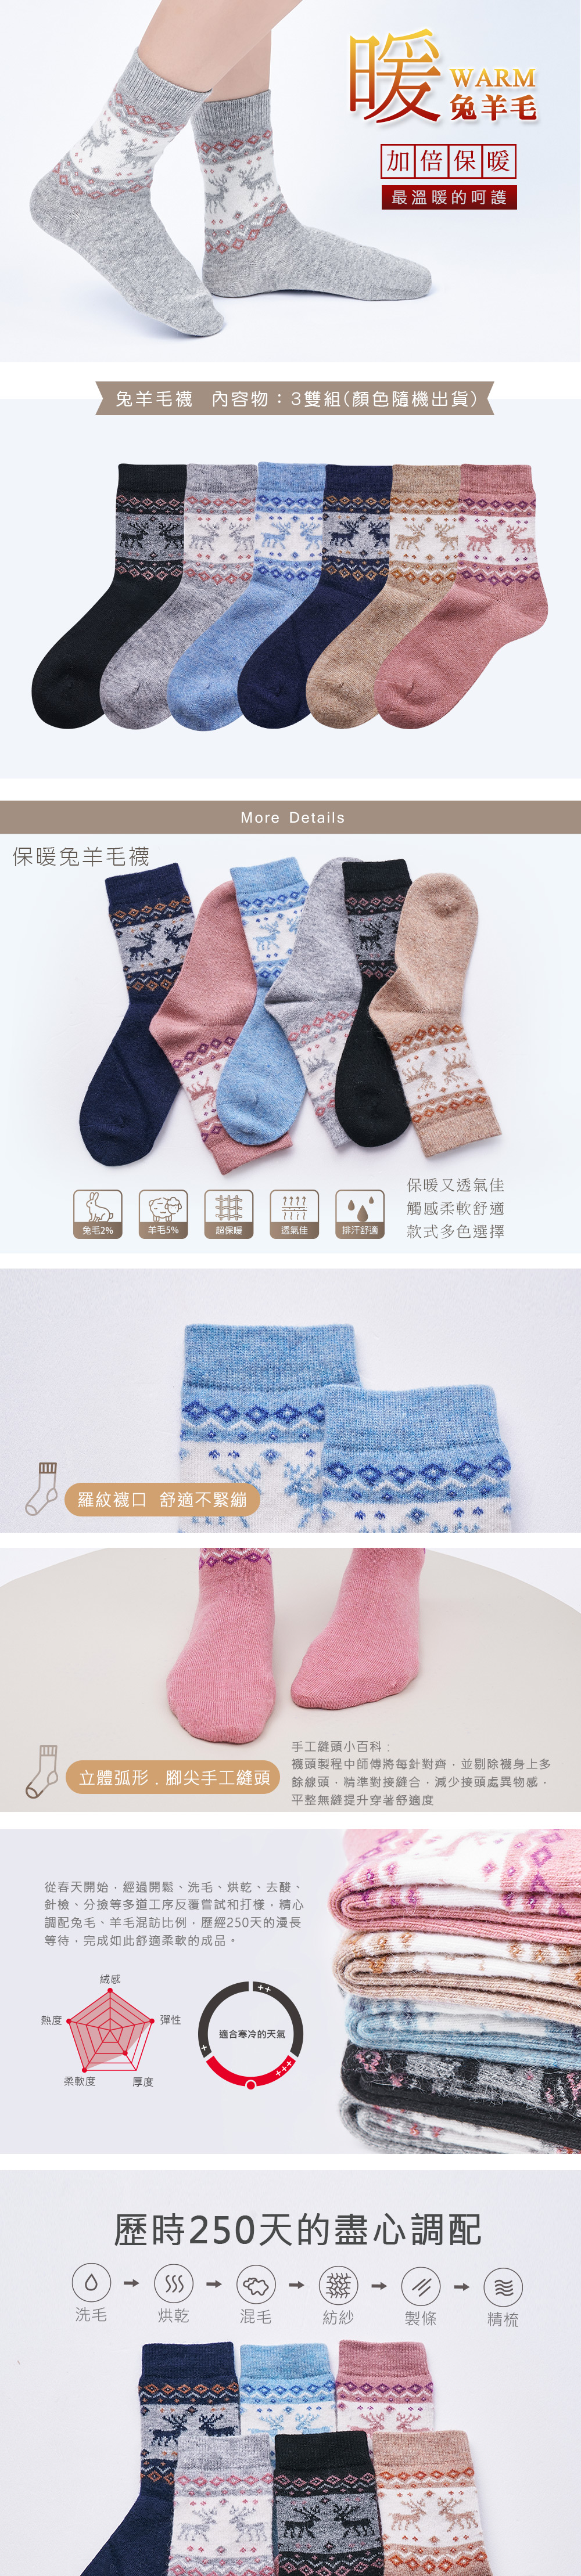 保暖兔羊毛襪(3雙)-656